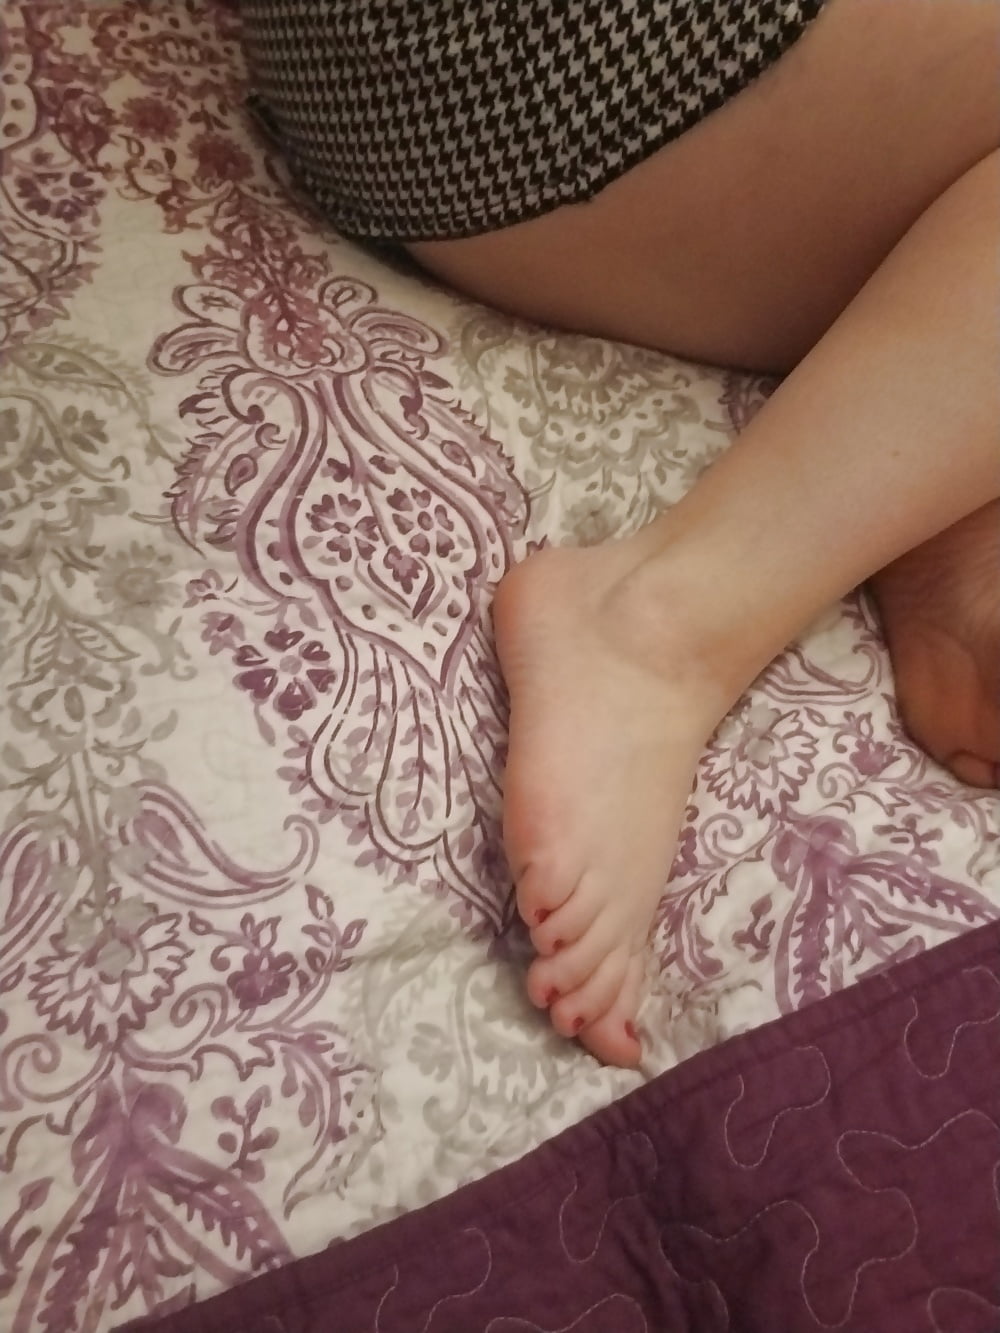 Pieds, jambes, talons et bottes de la douce ménagère sexy
 #106605623